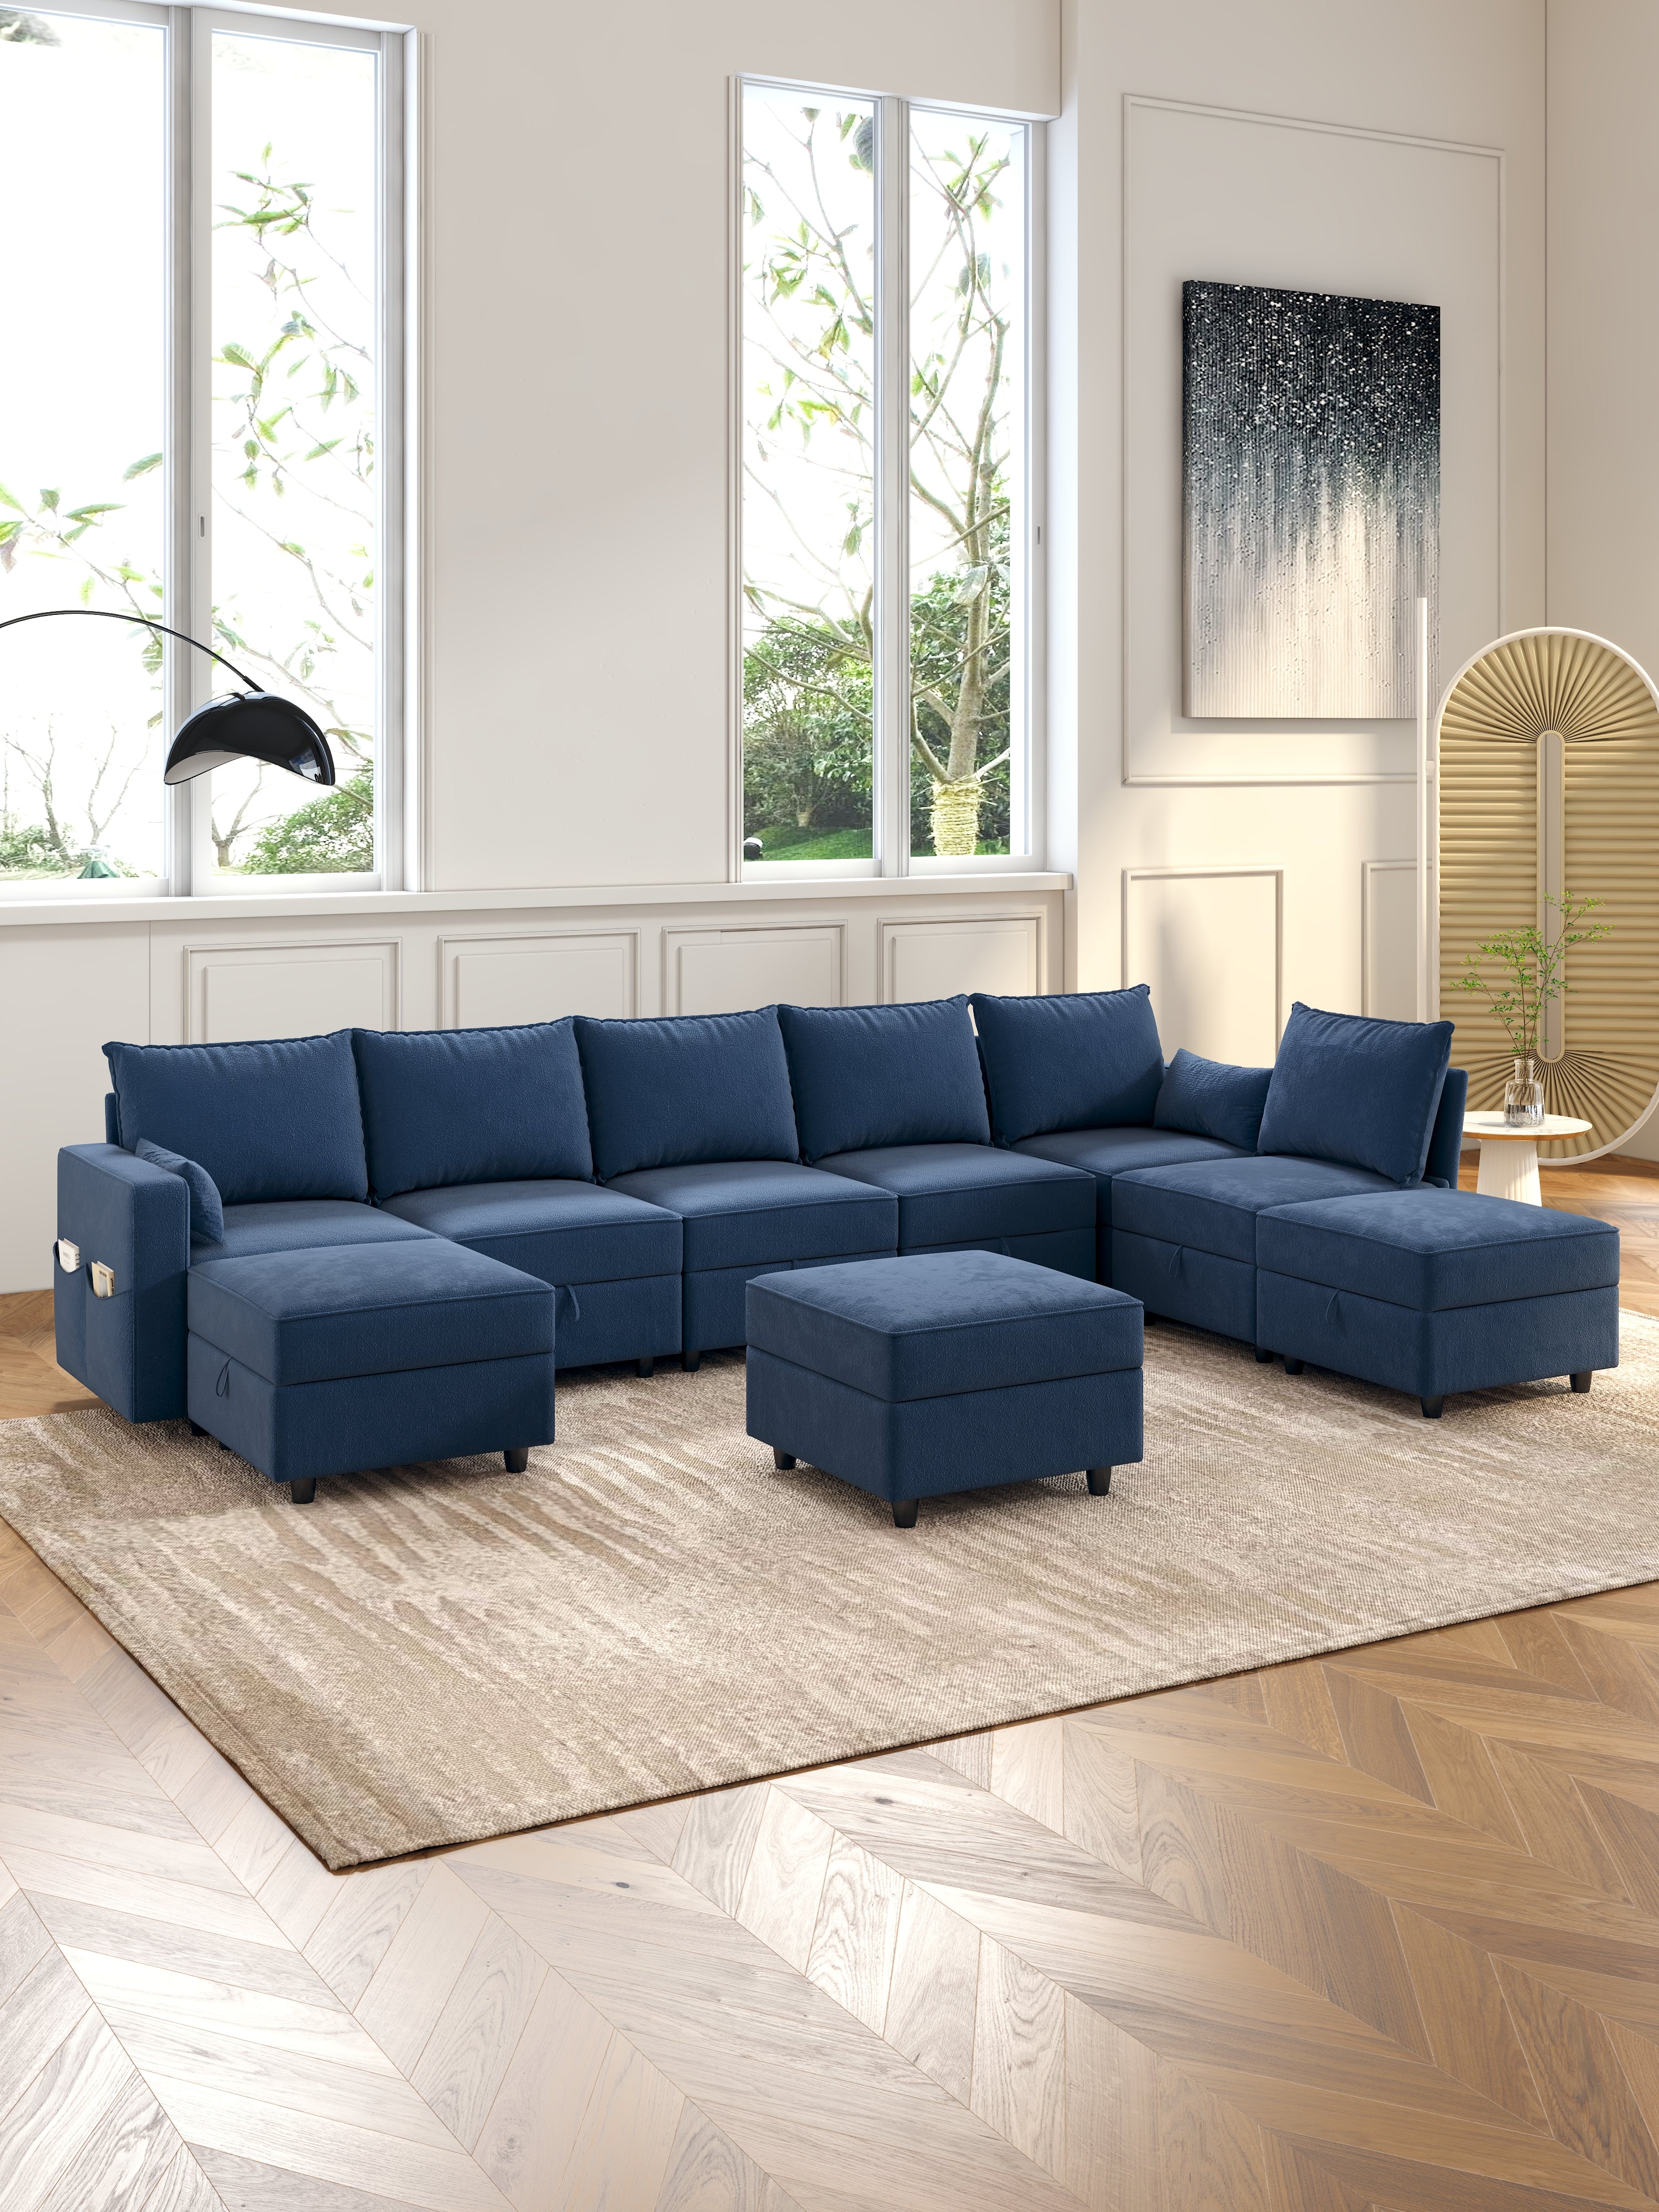 Versatile and Functional Modular Sectional Sofa